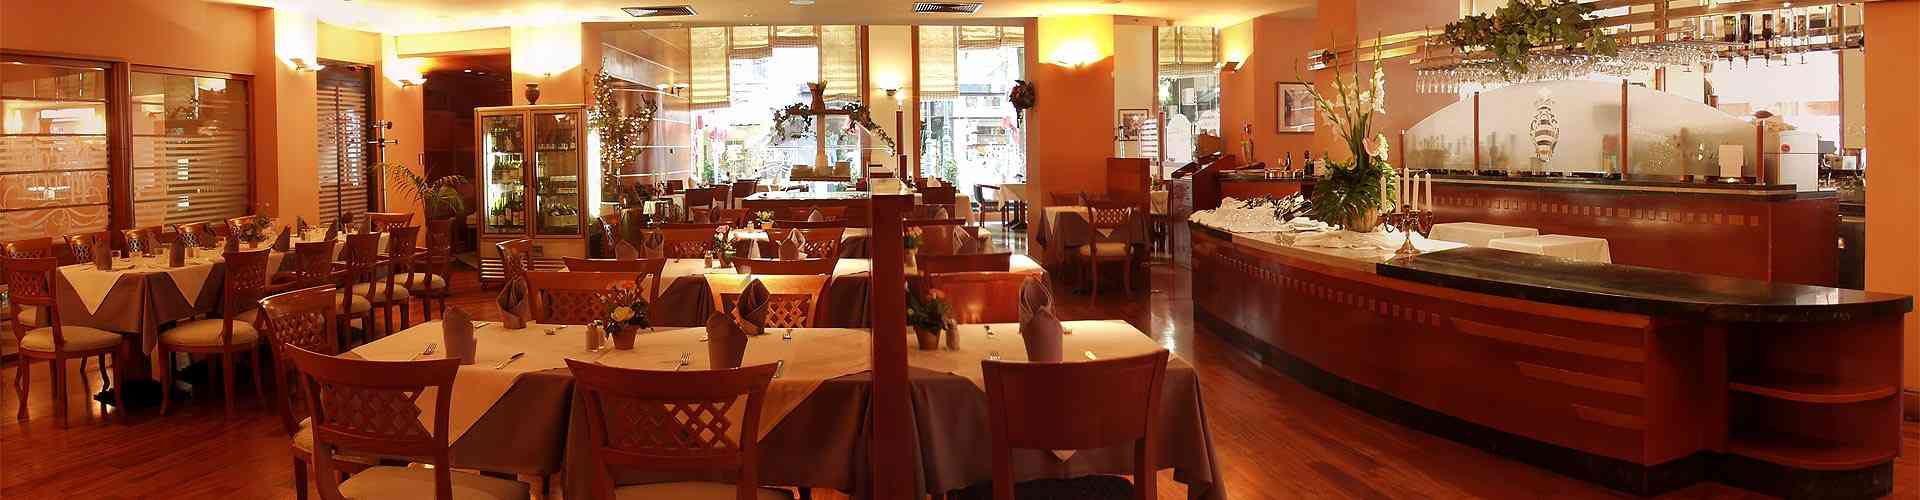 Restaurantes en Quintanilla-Riopico
           
           


          
          
          
